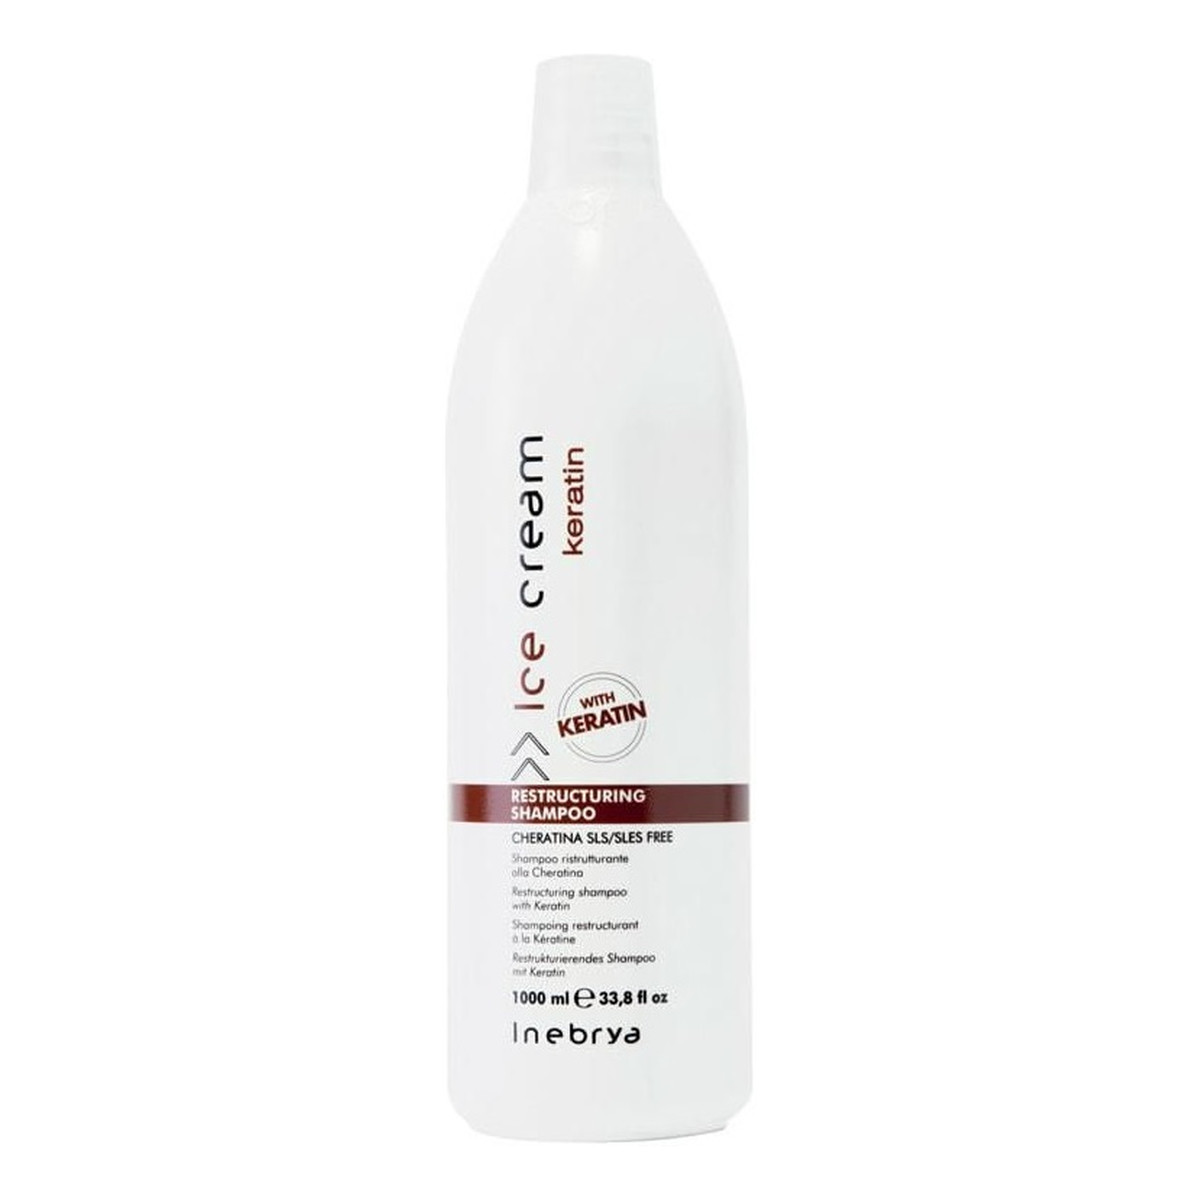 Inebrya Ice cream keratin restructuring shampoo restrukturyzujący szampon do włosów z keratyną 1000ml